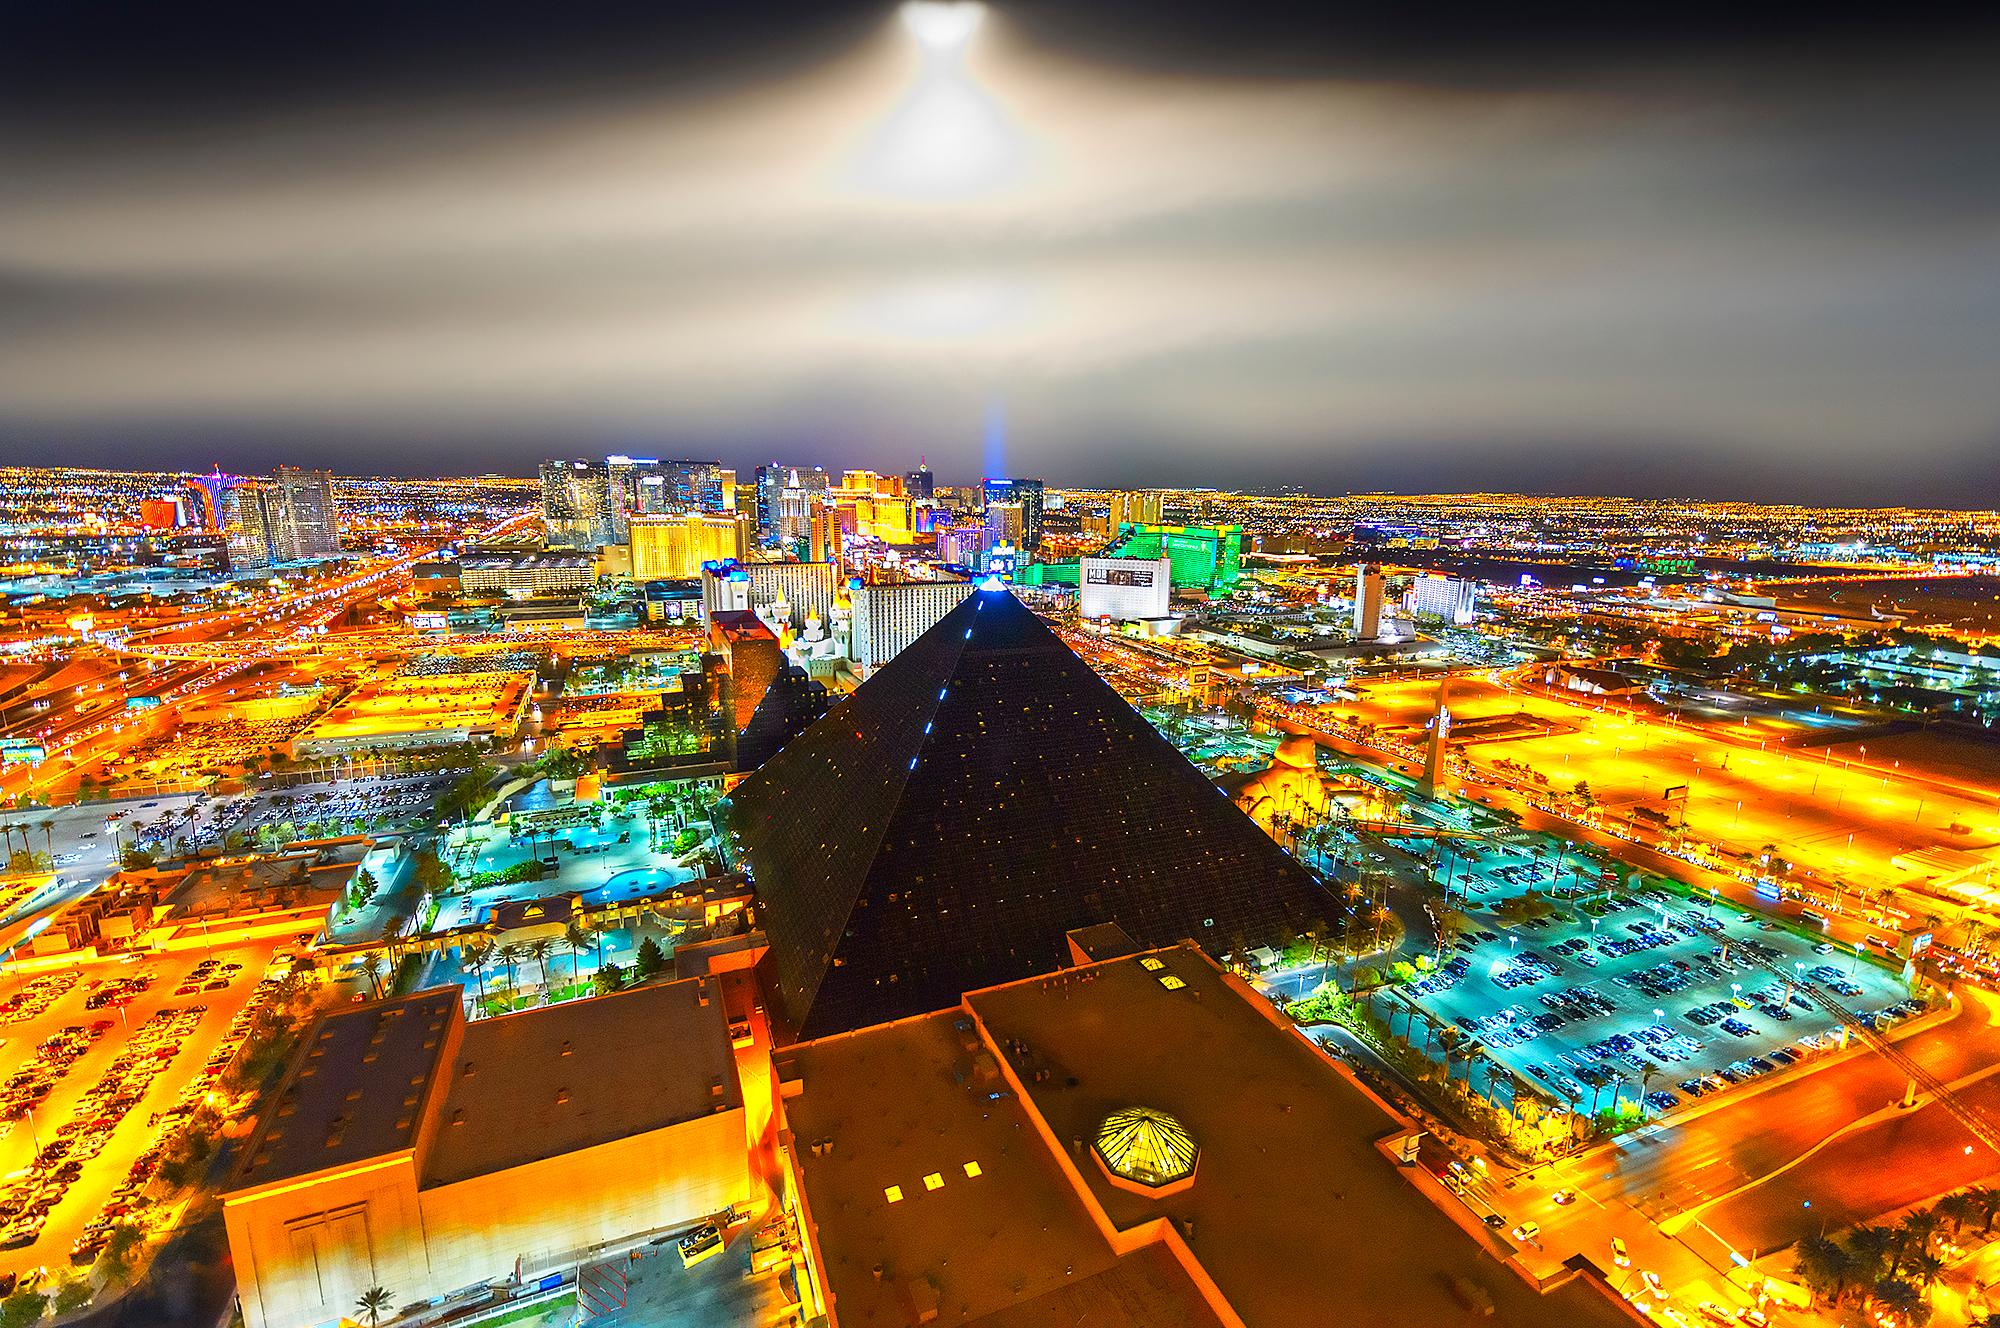 Vue surélevée de Las Vegas la nuit avec ciel éclairé par lune